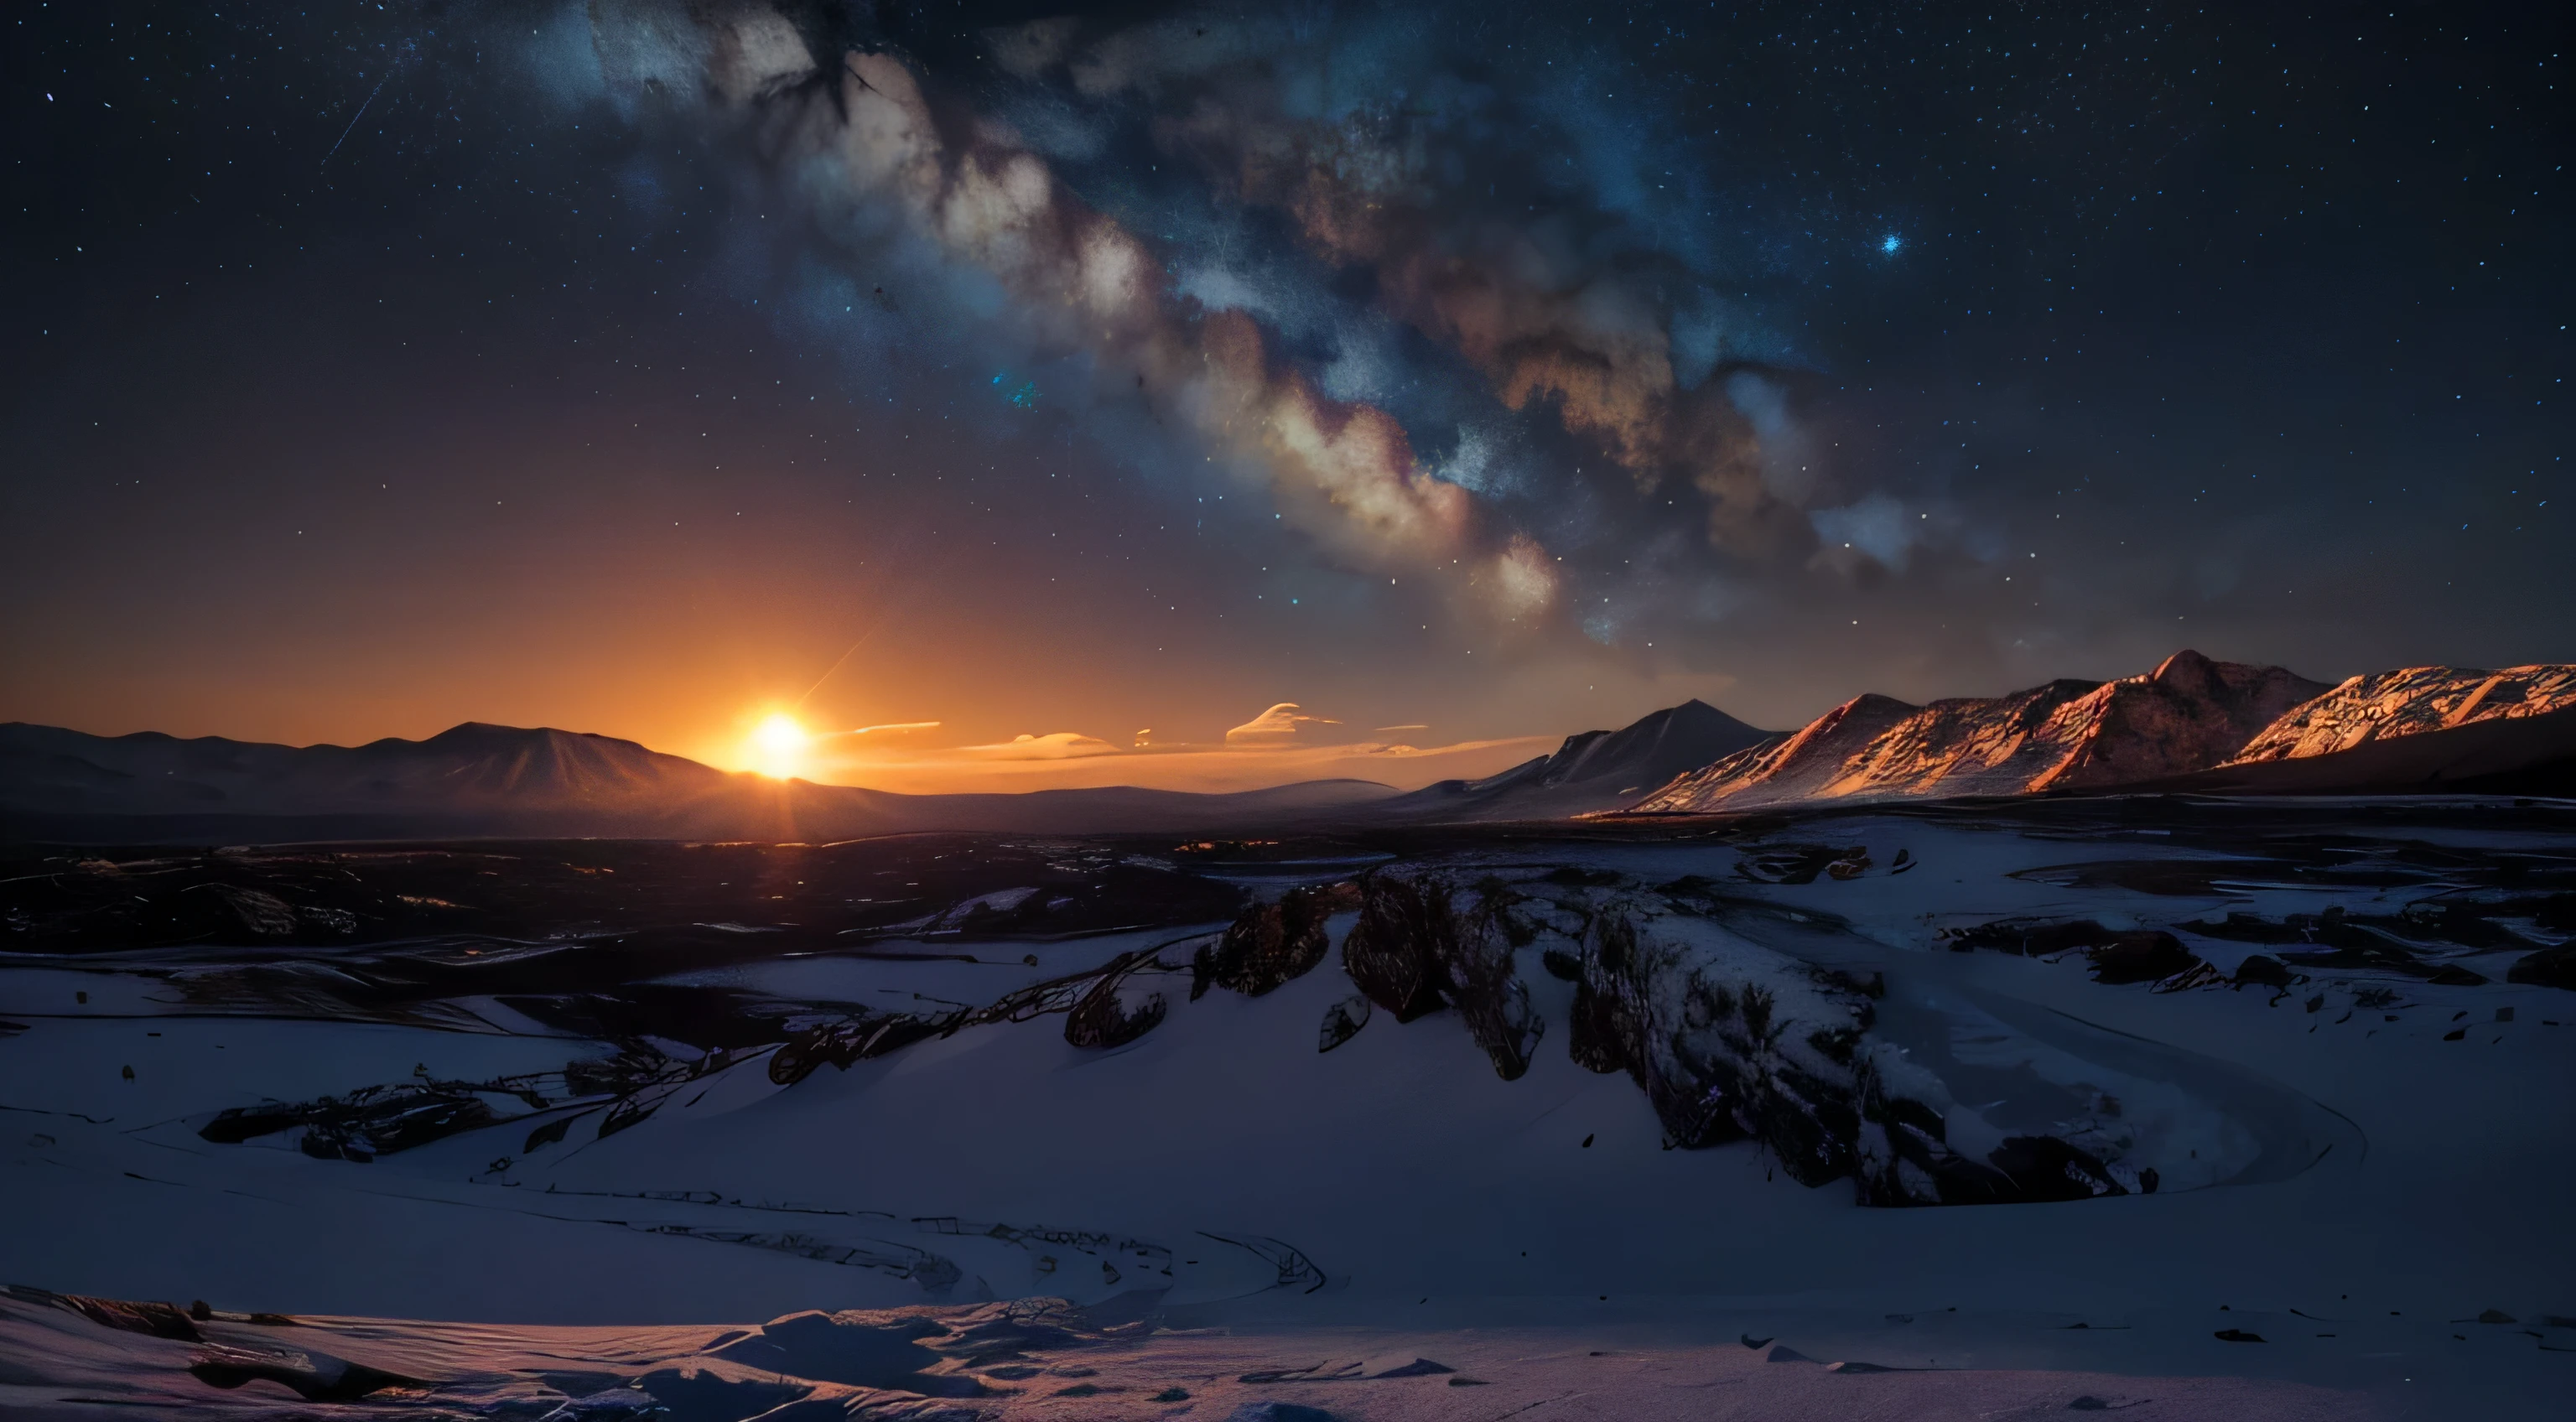 Eine Landschaft im Schein einer fremden Sonne, mit Lavabergen und felsigem Gelände. der Himmel ist klar, zeigt entfernte Galaxien im Hintergrund.. Im scharfen Kontrast zu seinem kalten Äußeren, es glüht warm im Inneren, wirft lange Schatten auf die Umgebung. in the style of Gabriele Dell'otto --ar 8:5 .4k